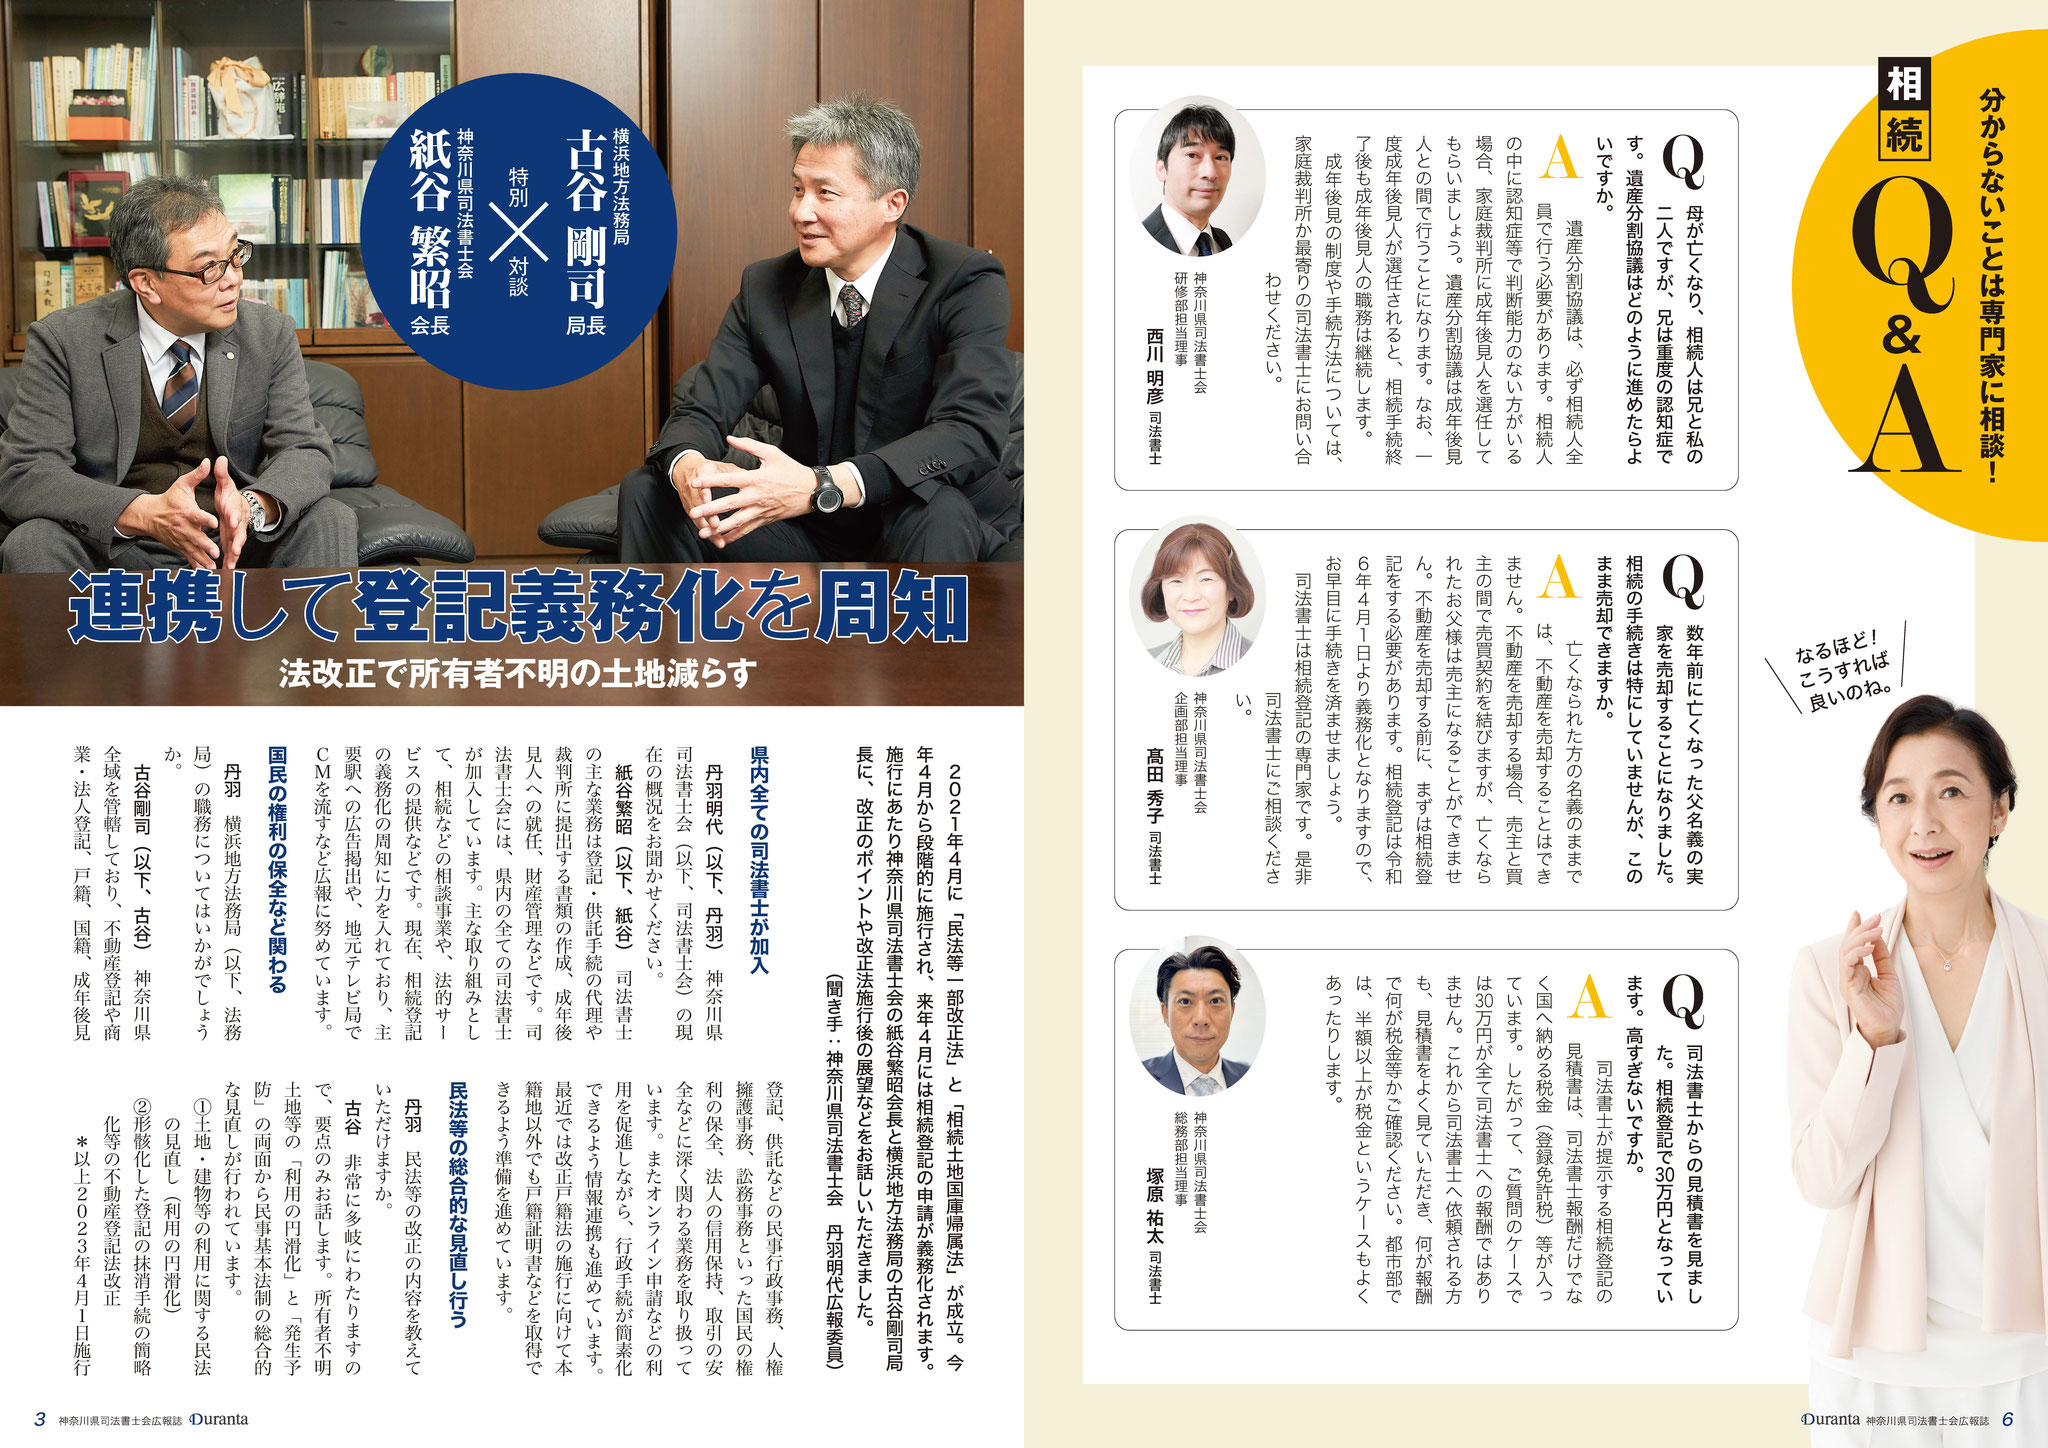 神奈川県司法書士広報誌Duranta（デュランタ）第２号に「司法書士高田秀子」が掲載されました。 